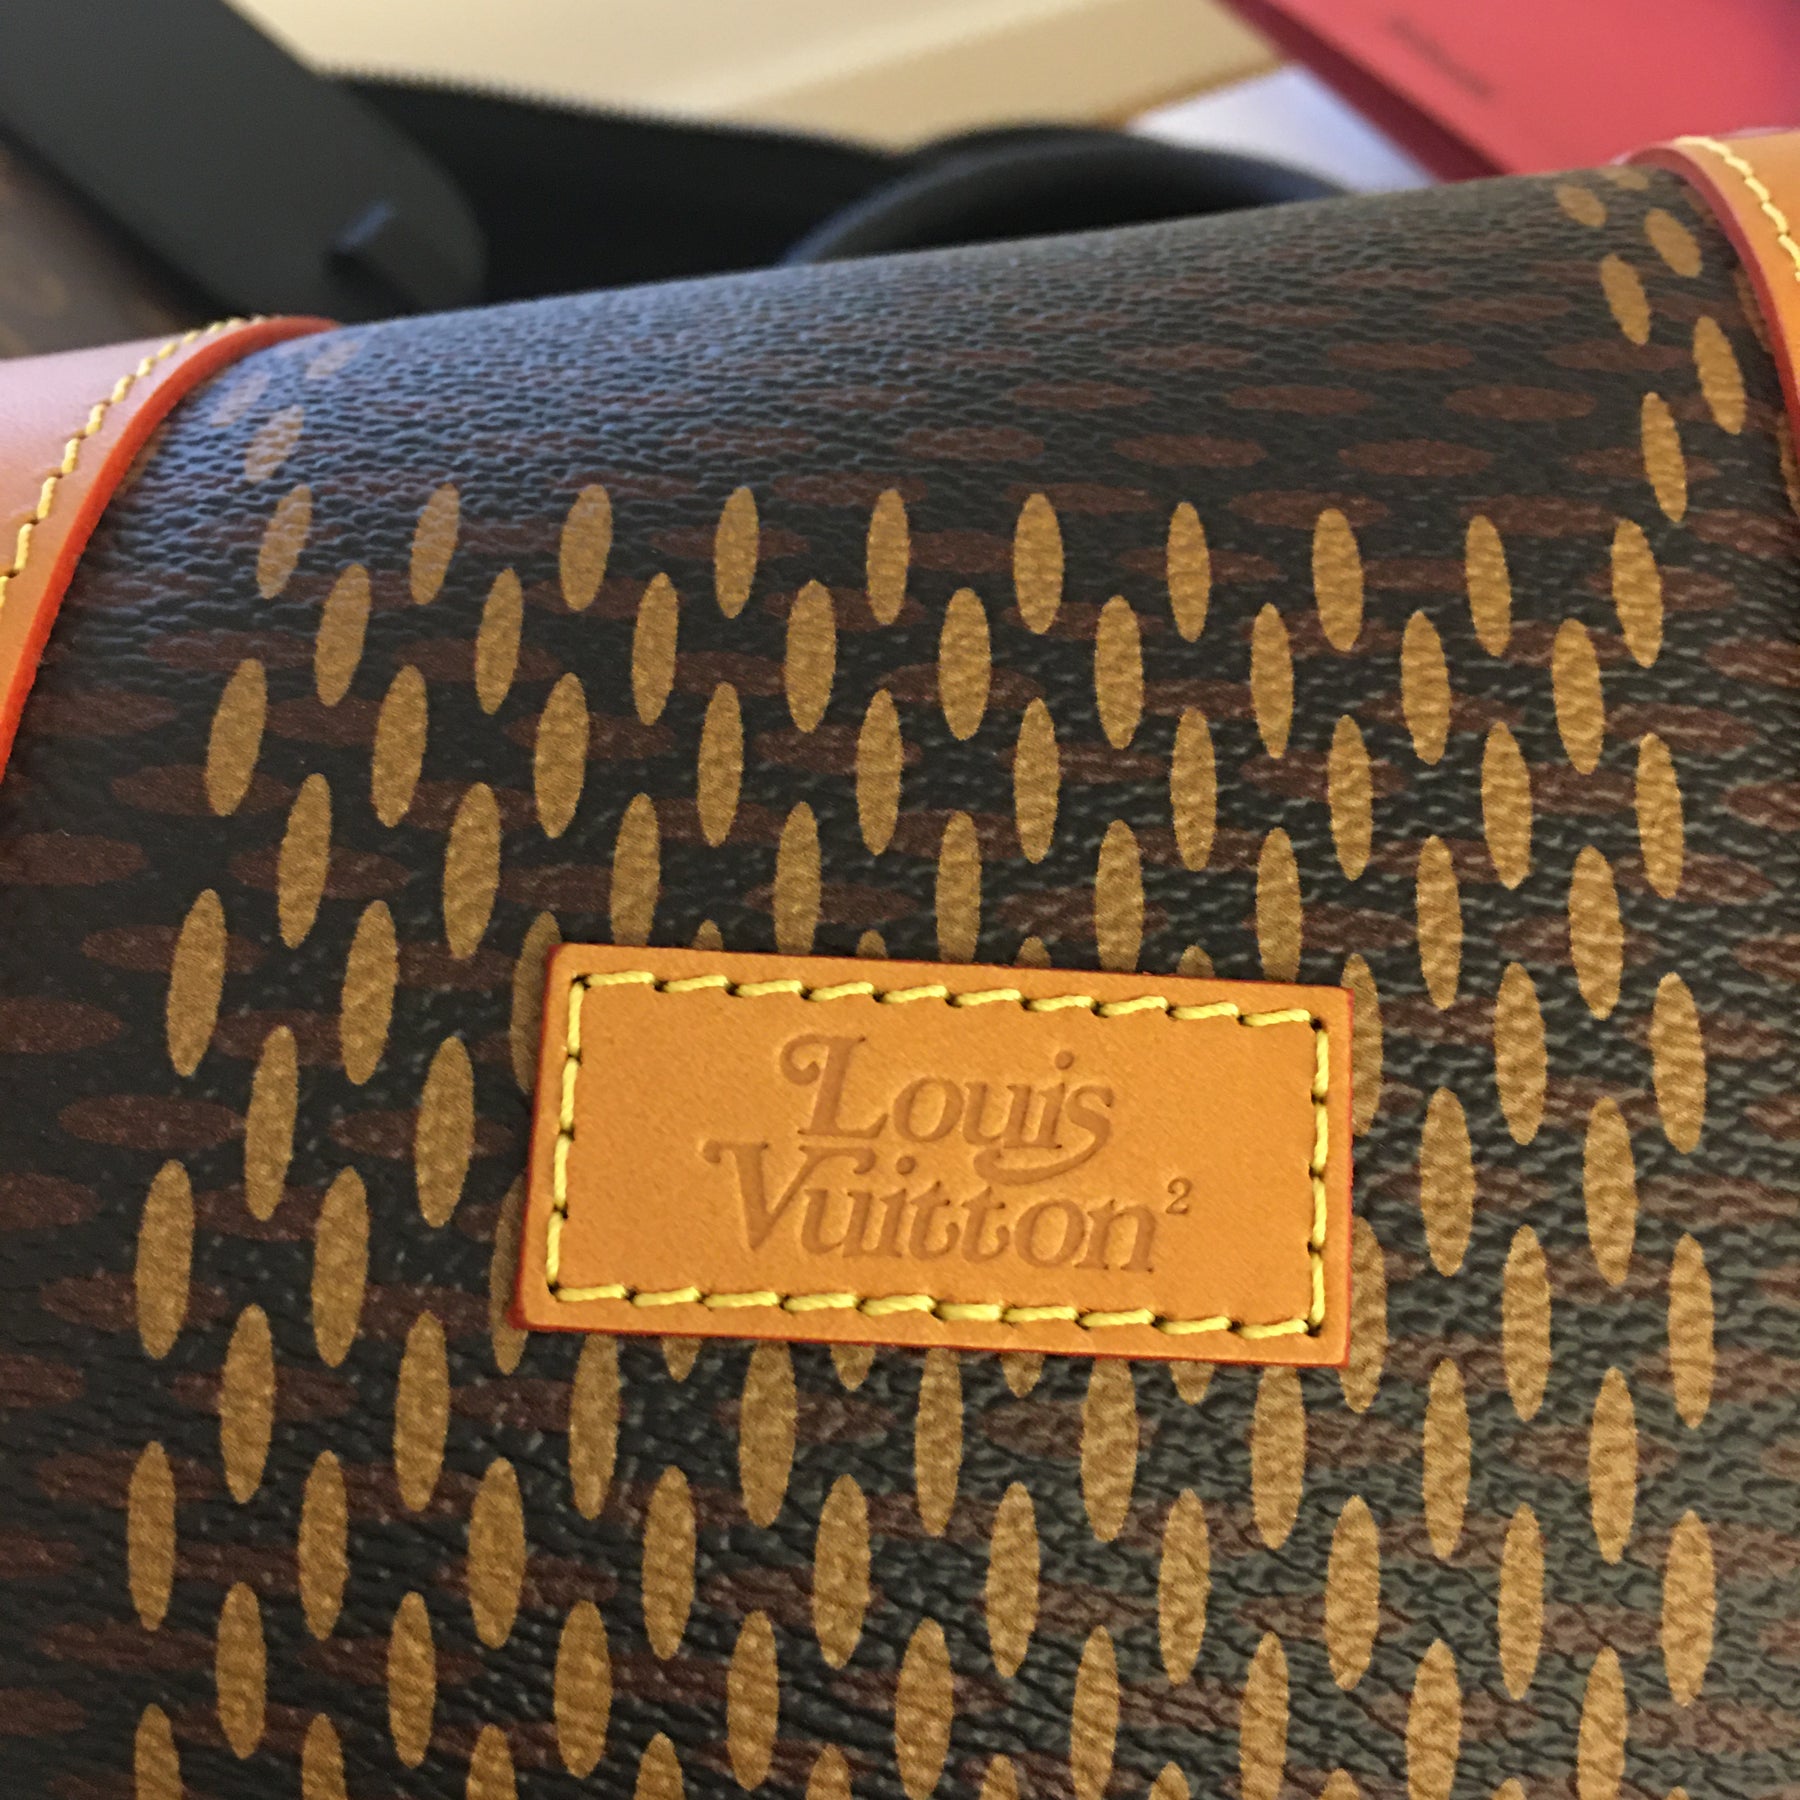 A Louis Vuitton Ltm Ed NIGO Keepall 50 Bandouliere